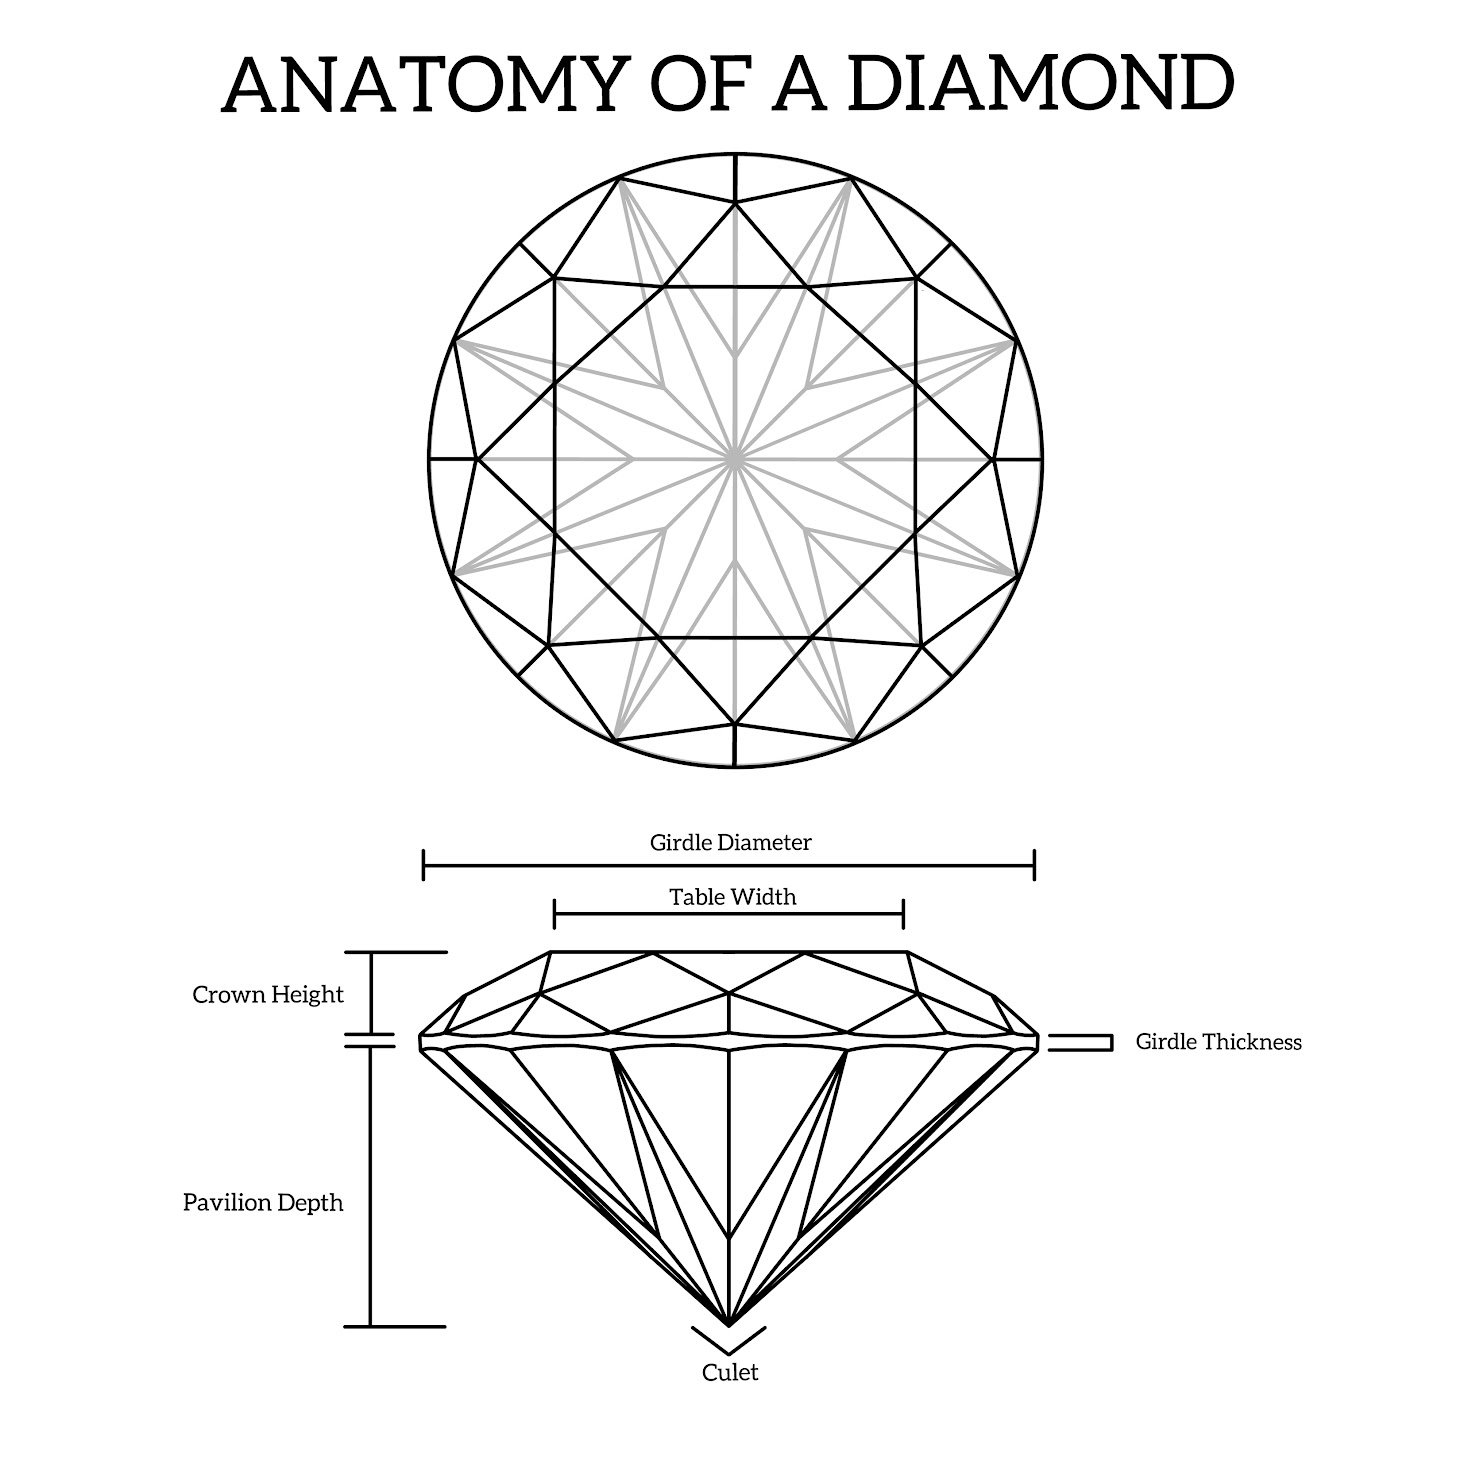 Immagine vibrante che cattura il fascino degli orecchini di diamanti naturali, sottolineandone la scarsità e il potenziale di investimento